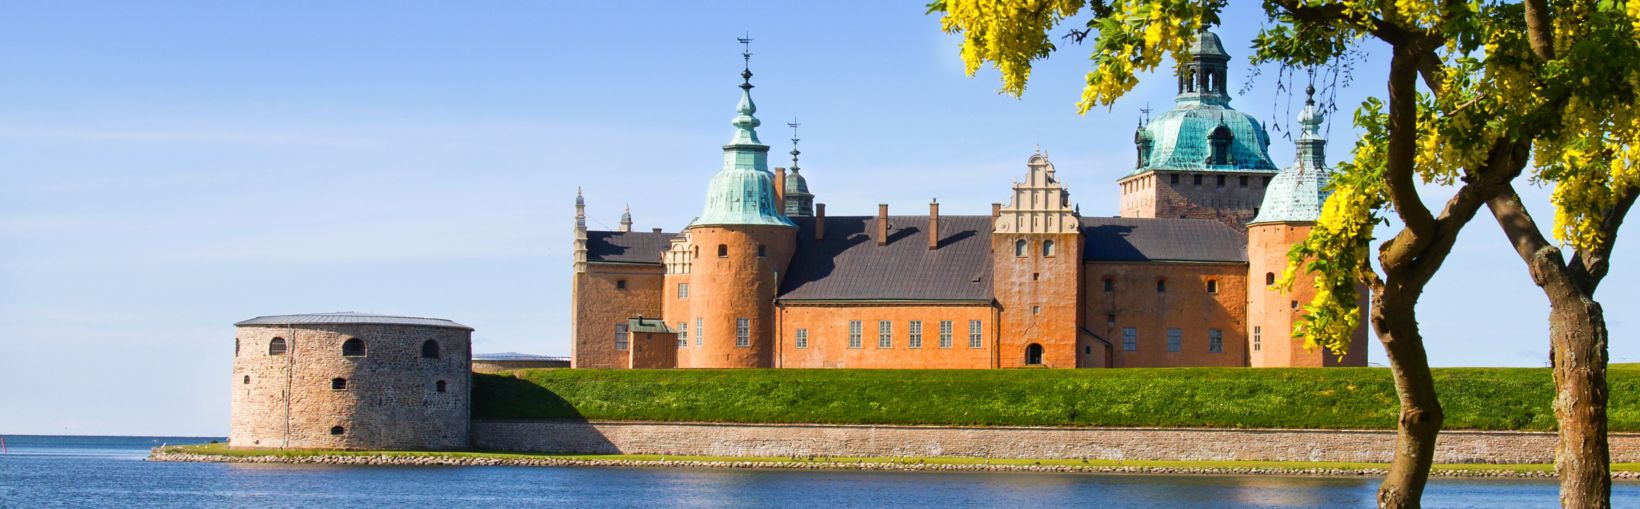 Medieval Castle in Kalmar, Sweden.